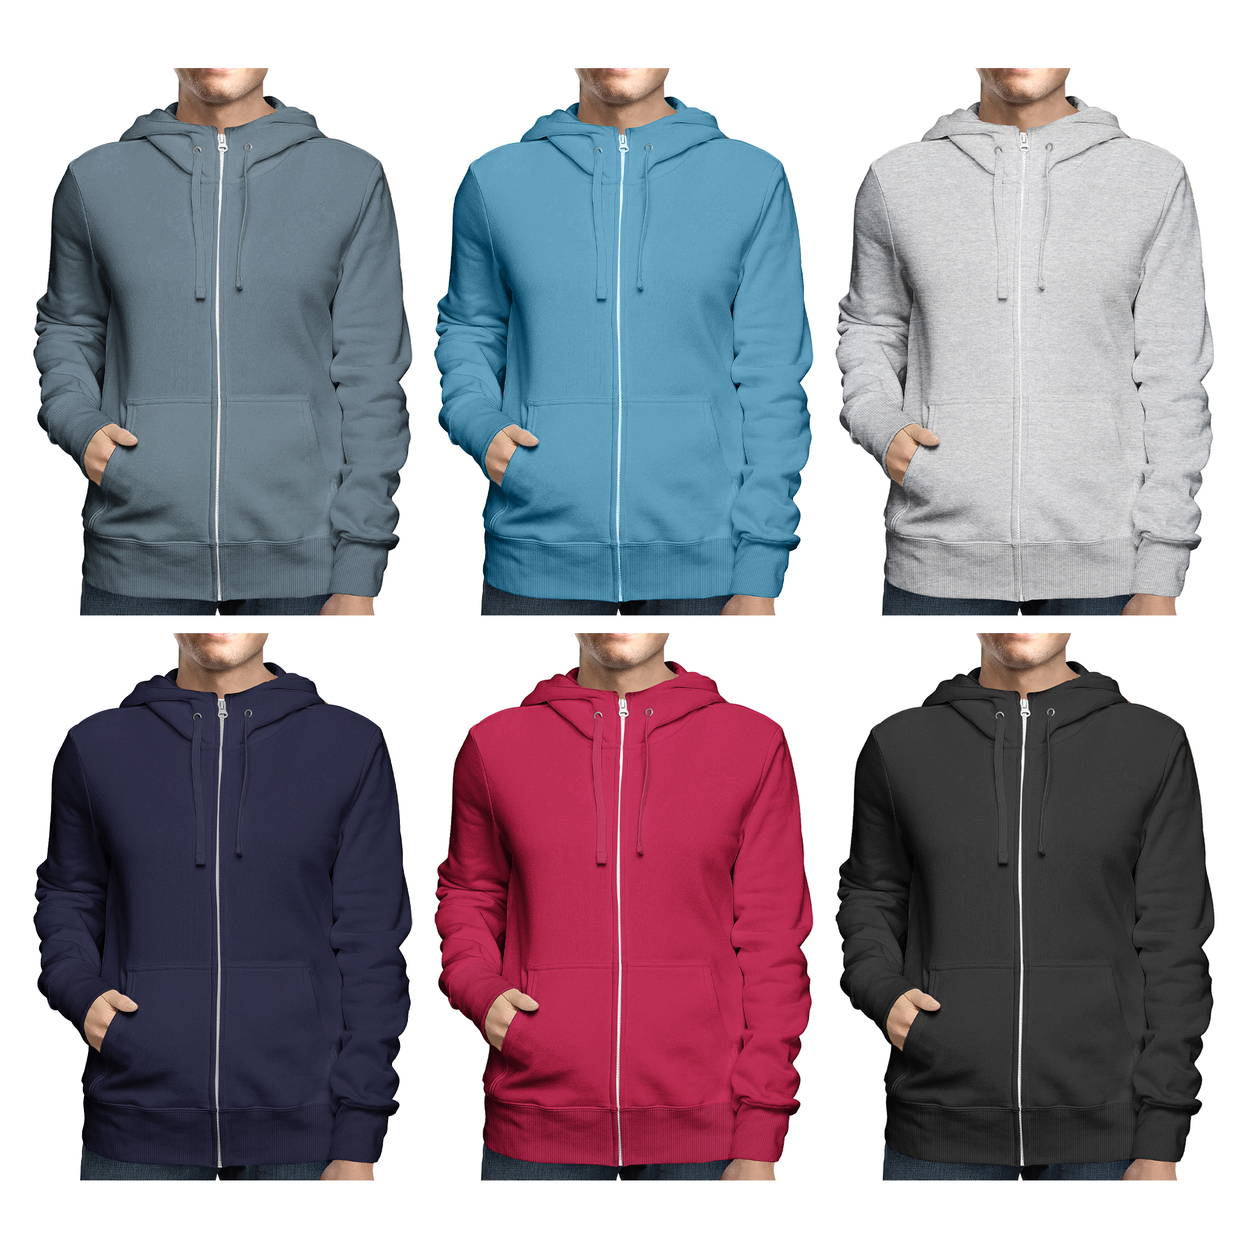 Men's Winter Warm Cozy Full Zip-Up Fleece Lined Soft Hoodie Sweatshirt - Charcoal, Small